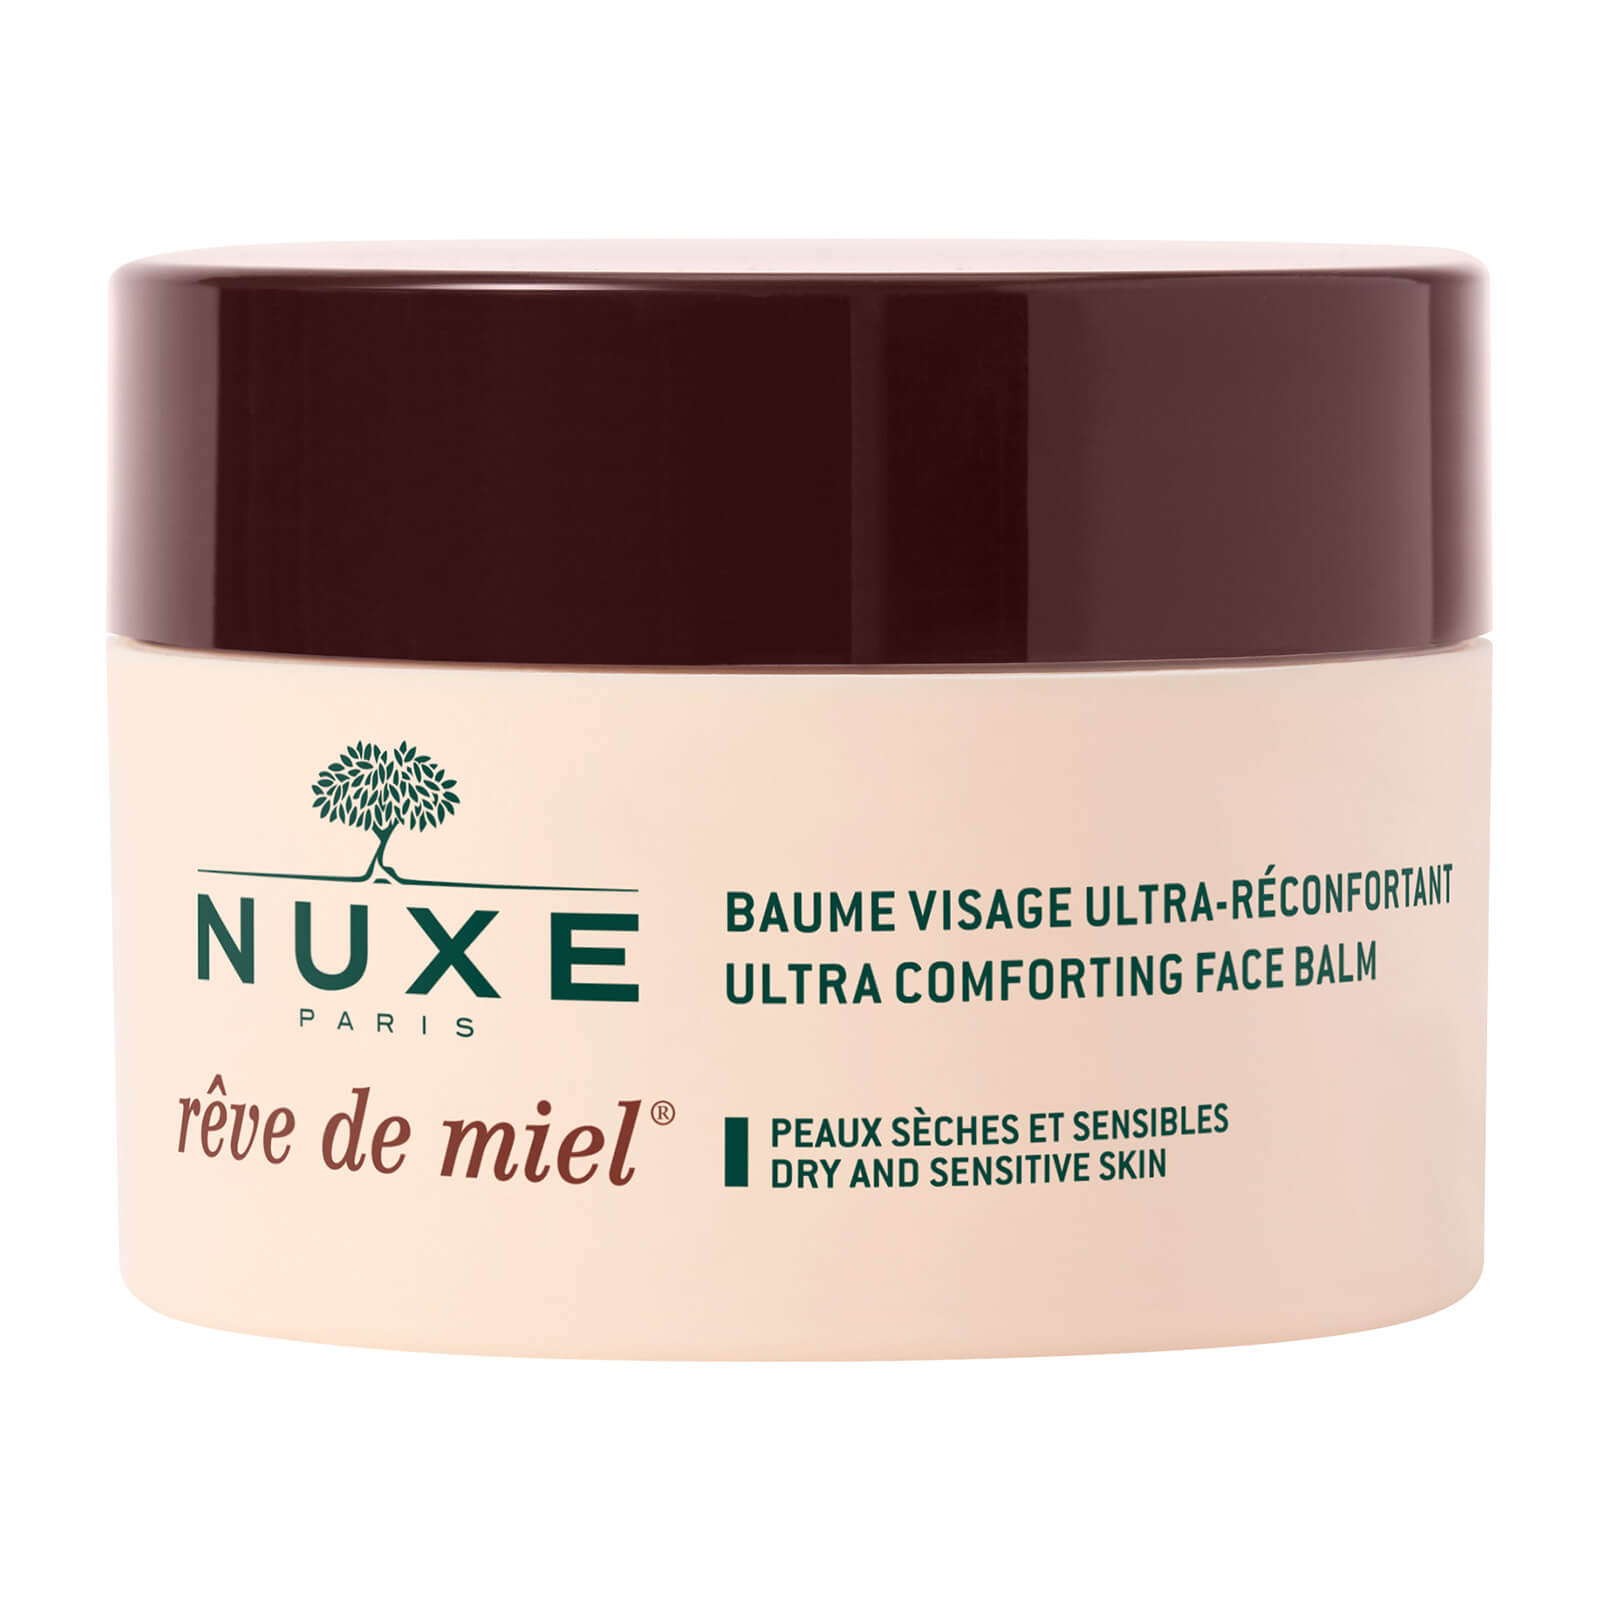 NUXE Reve de Miel Ultra Comforting Face Balm 50ml lookfantastic.com imagine